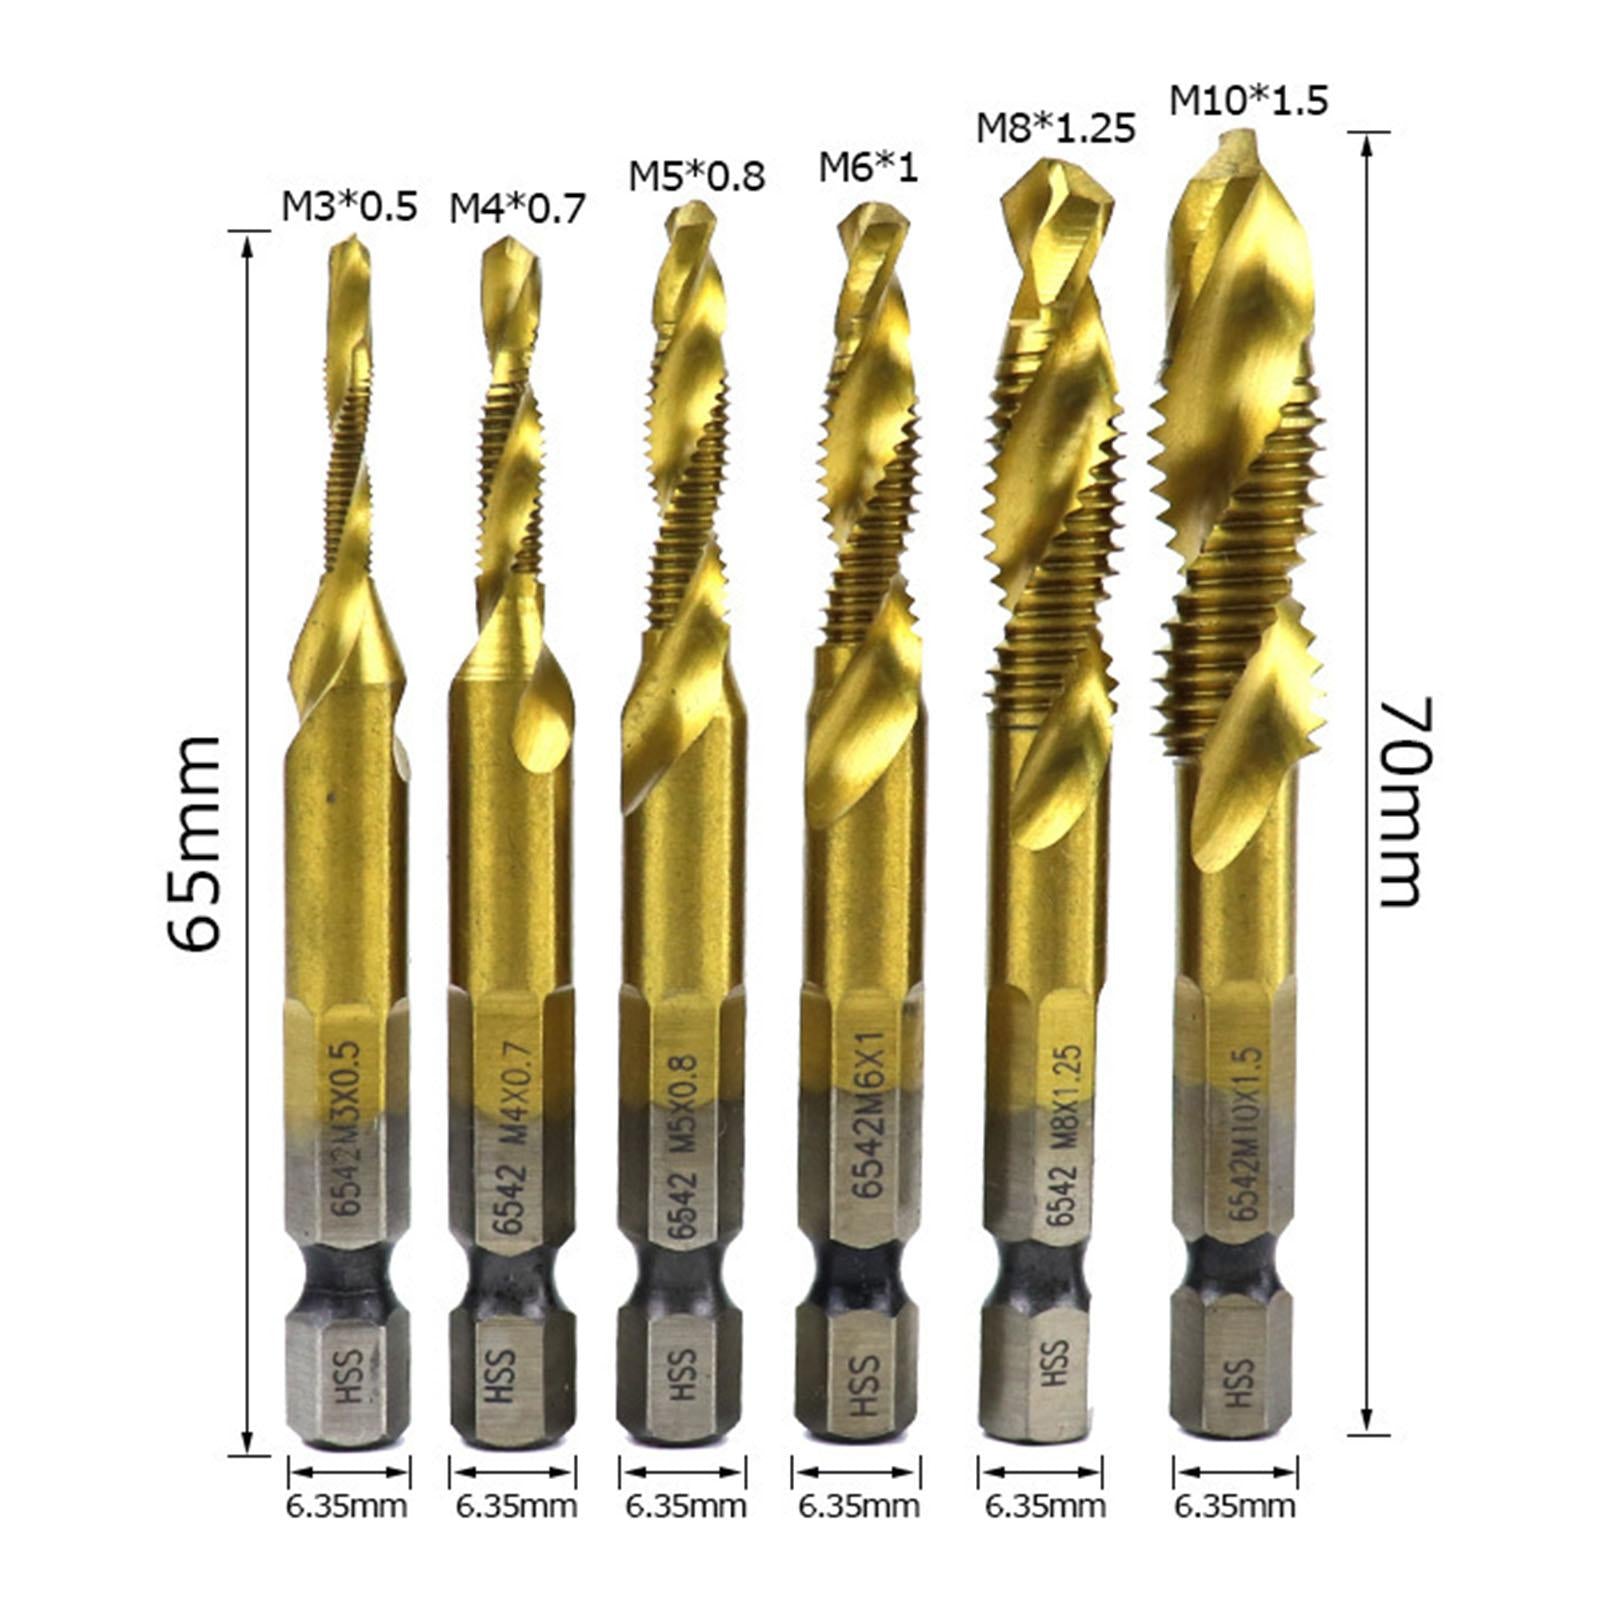 6x Hexagon Handle Compound Tap Drill Bits Composite Tap M3 M4 M5 M6 M10 Gold